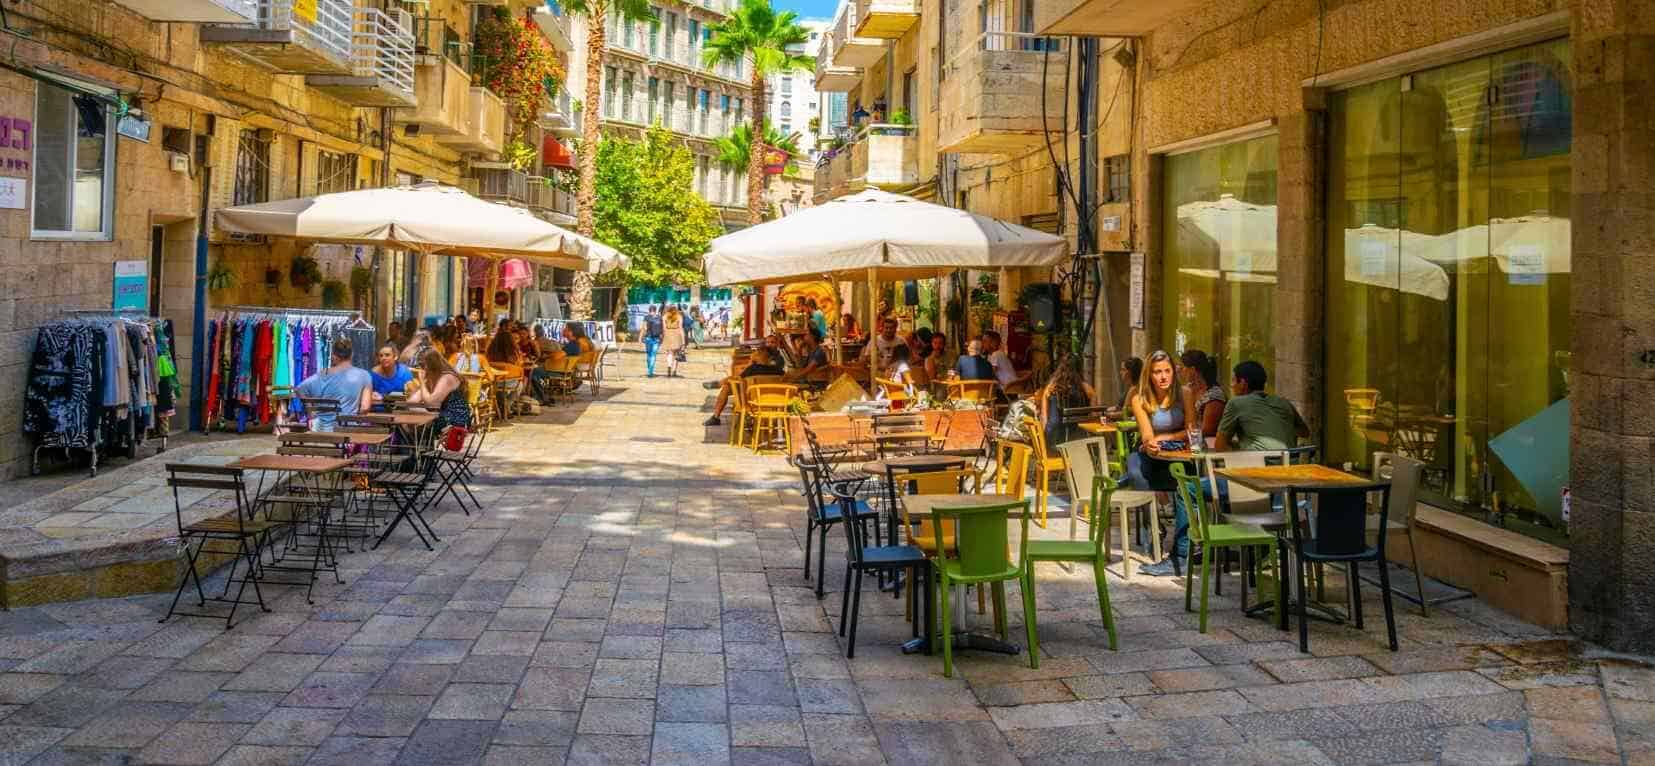 טיפים לתיירים בישראל